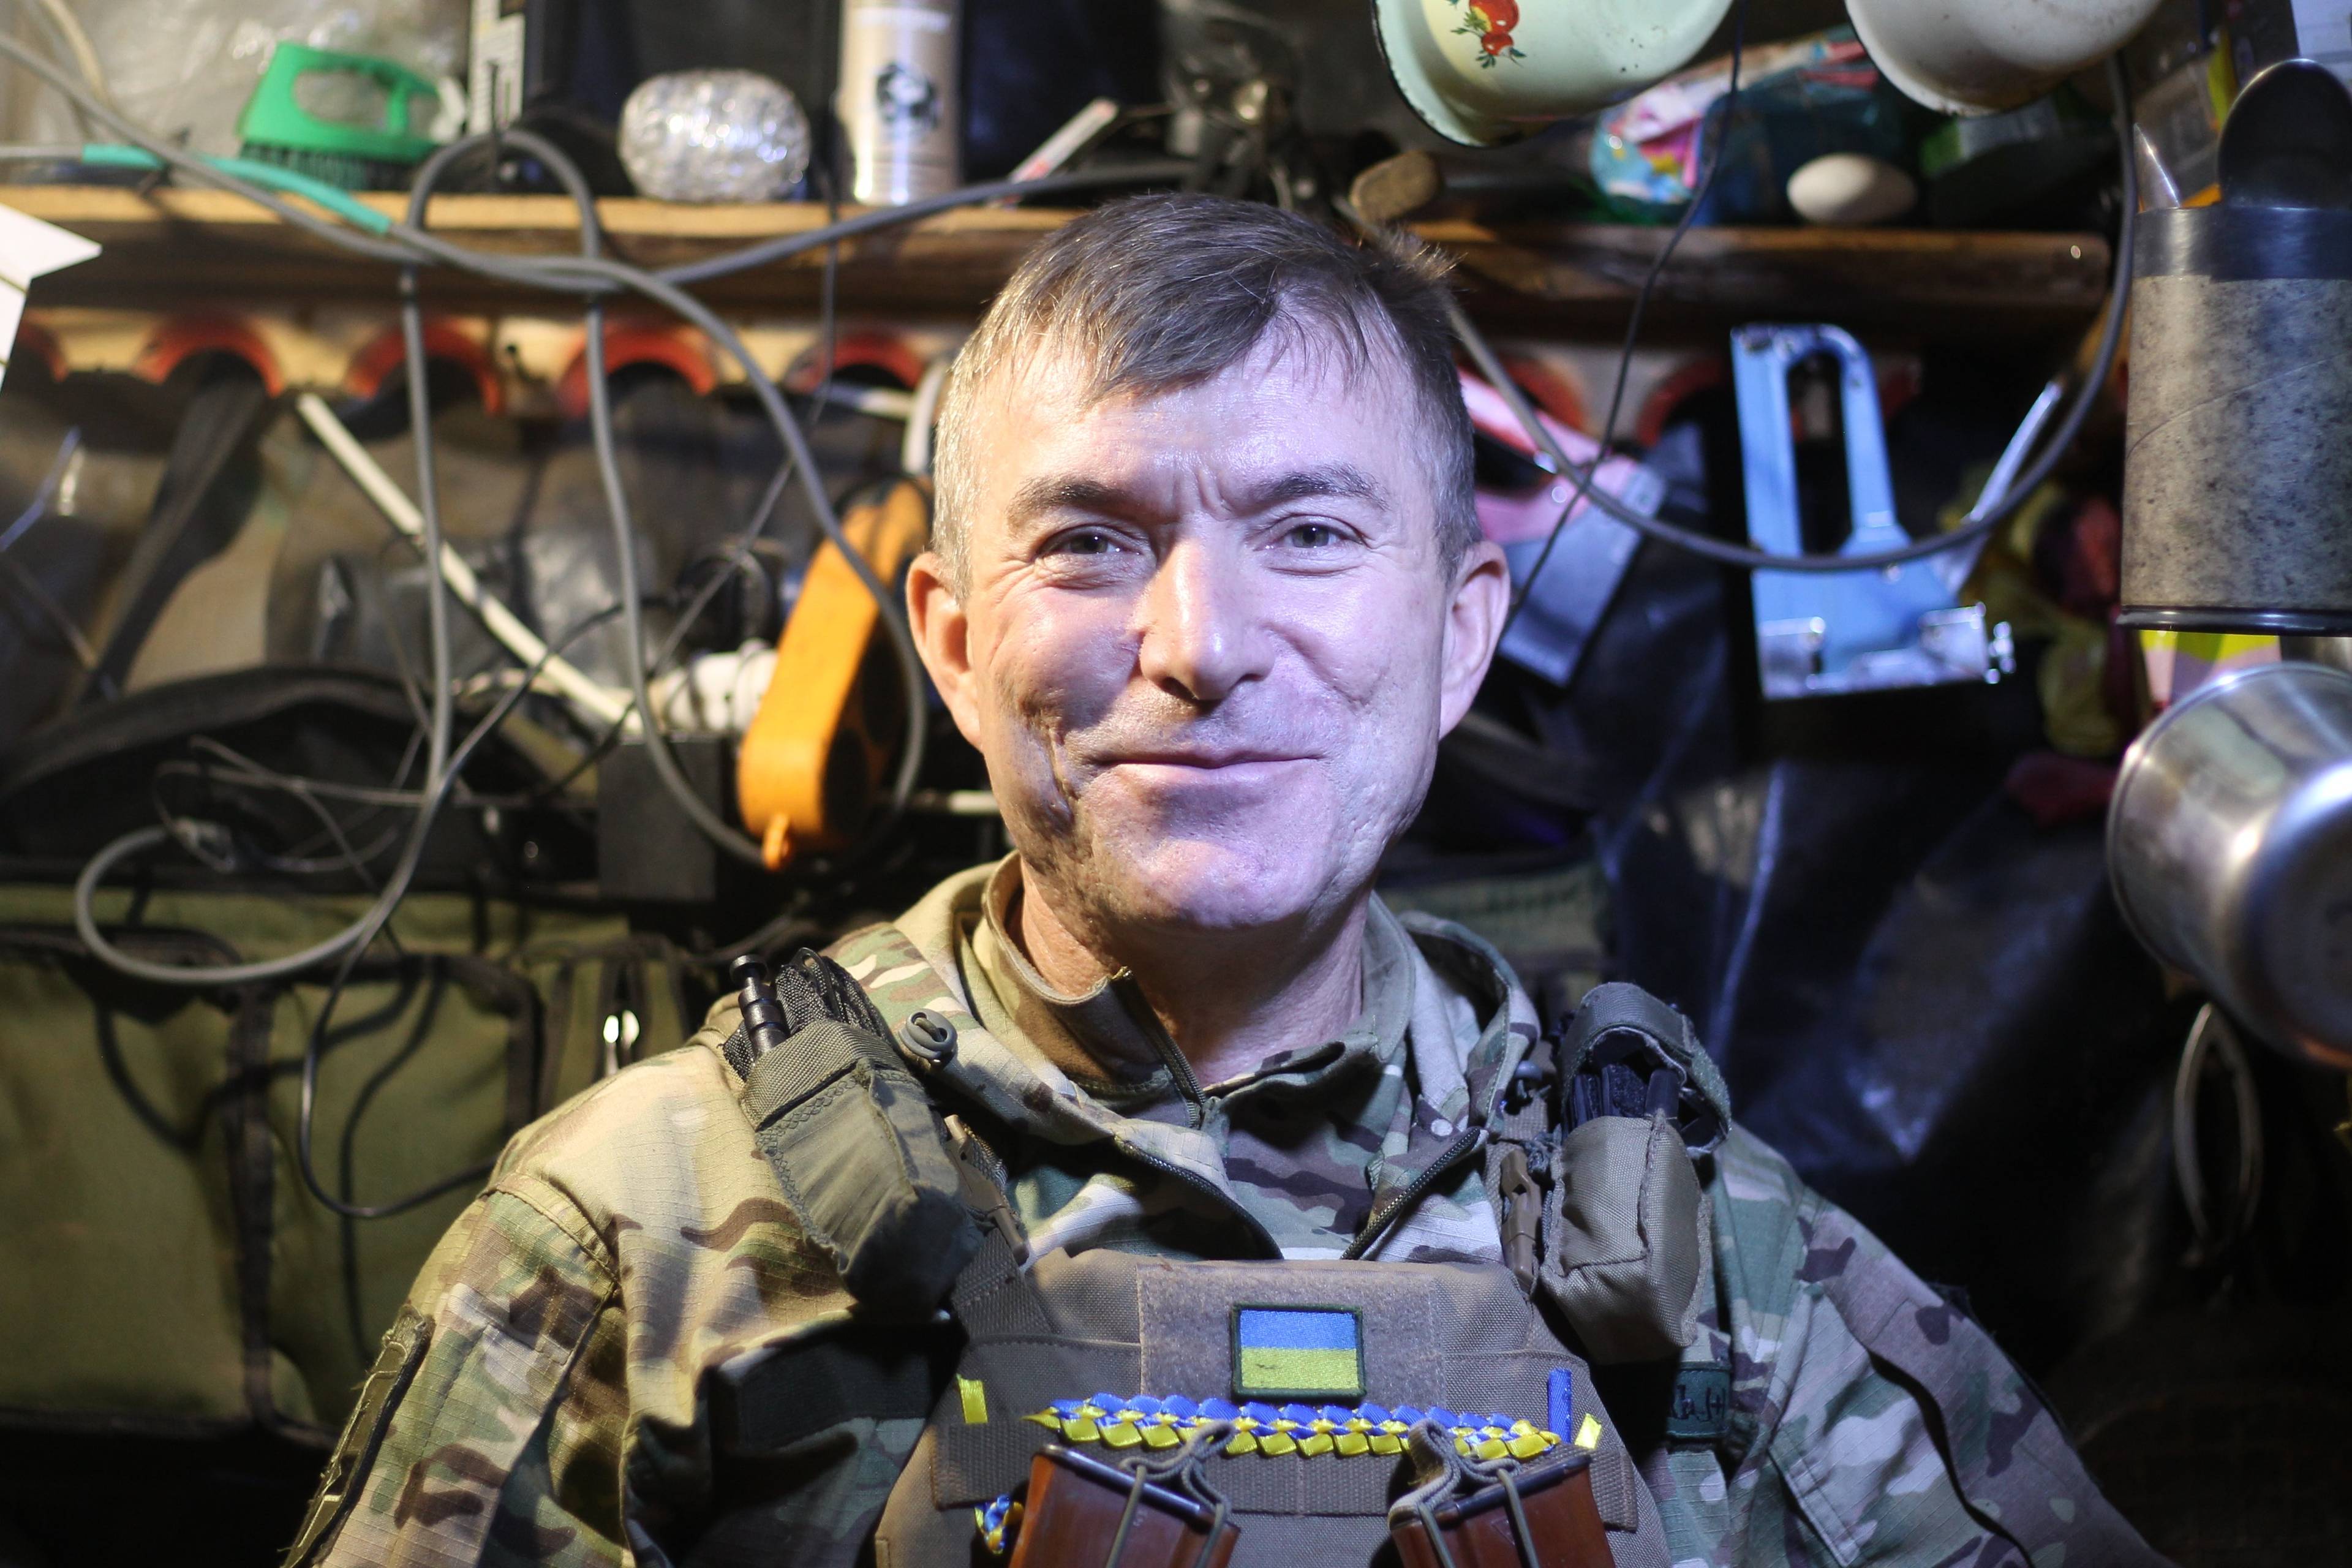 Zdjęcie uśmiechniętego żołnierza we wnętrzu ziemianki